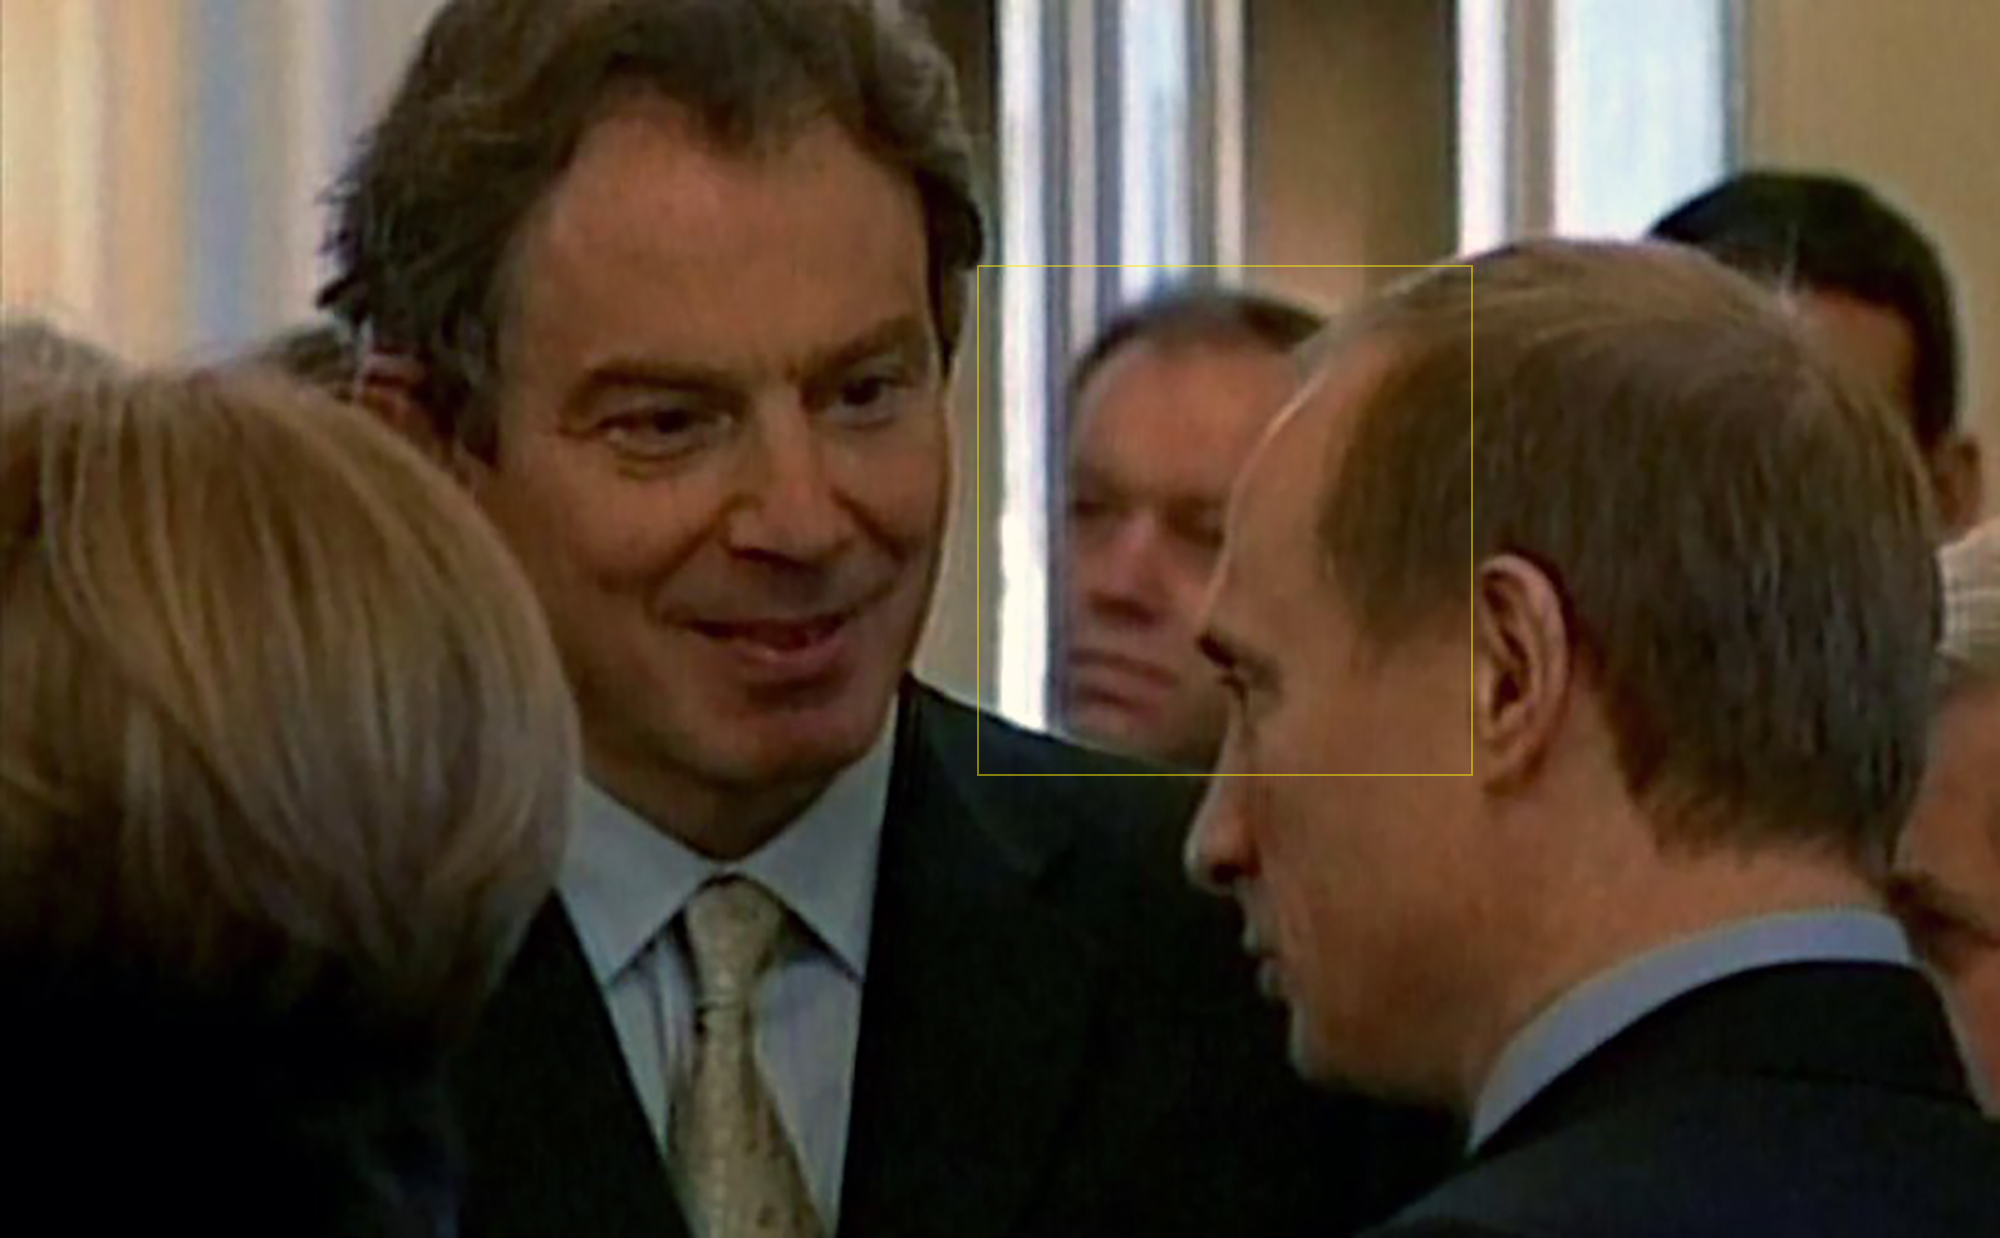 Lopyrev, Mitte, abgebildet mit Tony Blair, links, und Putin, rechts, im Jahr 2002